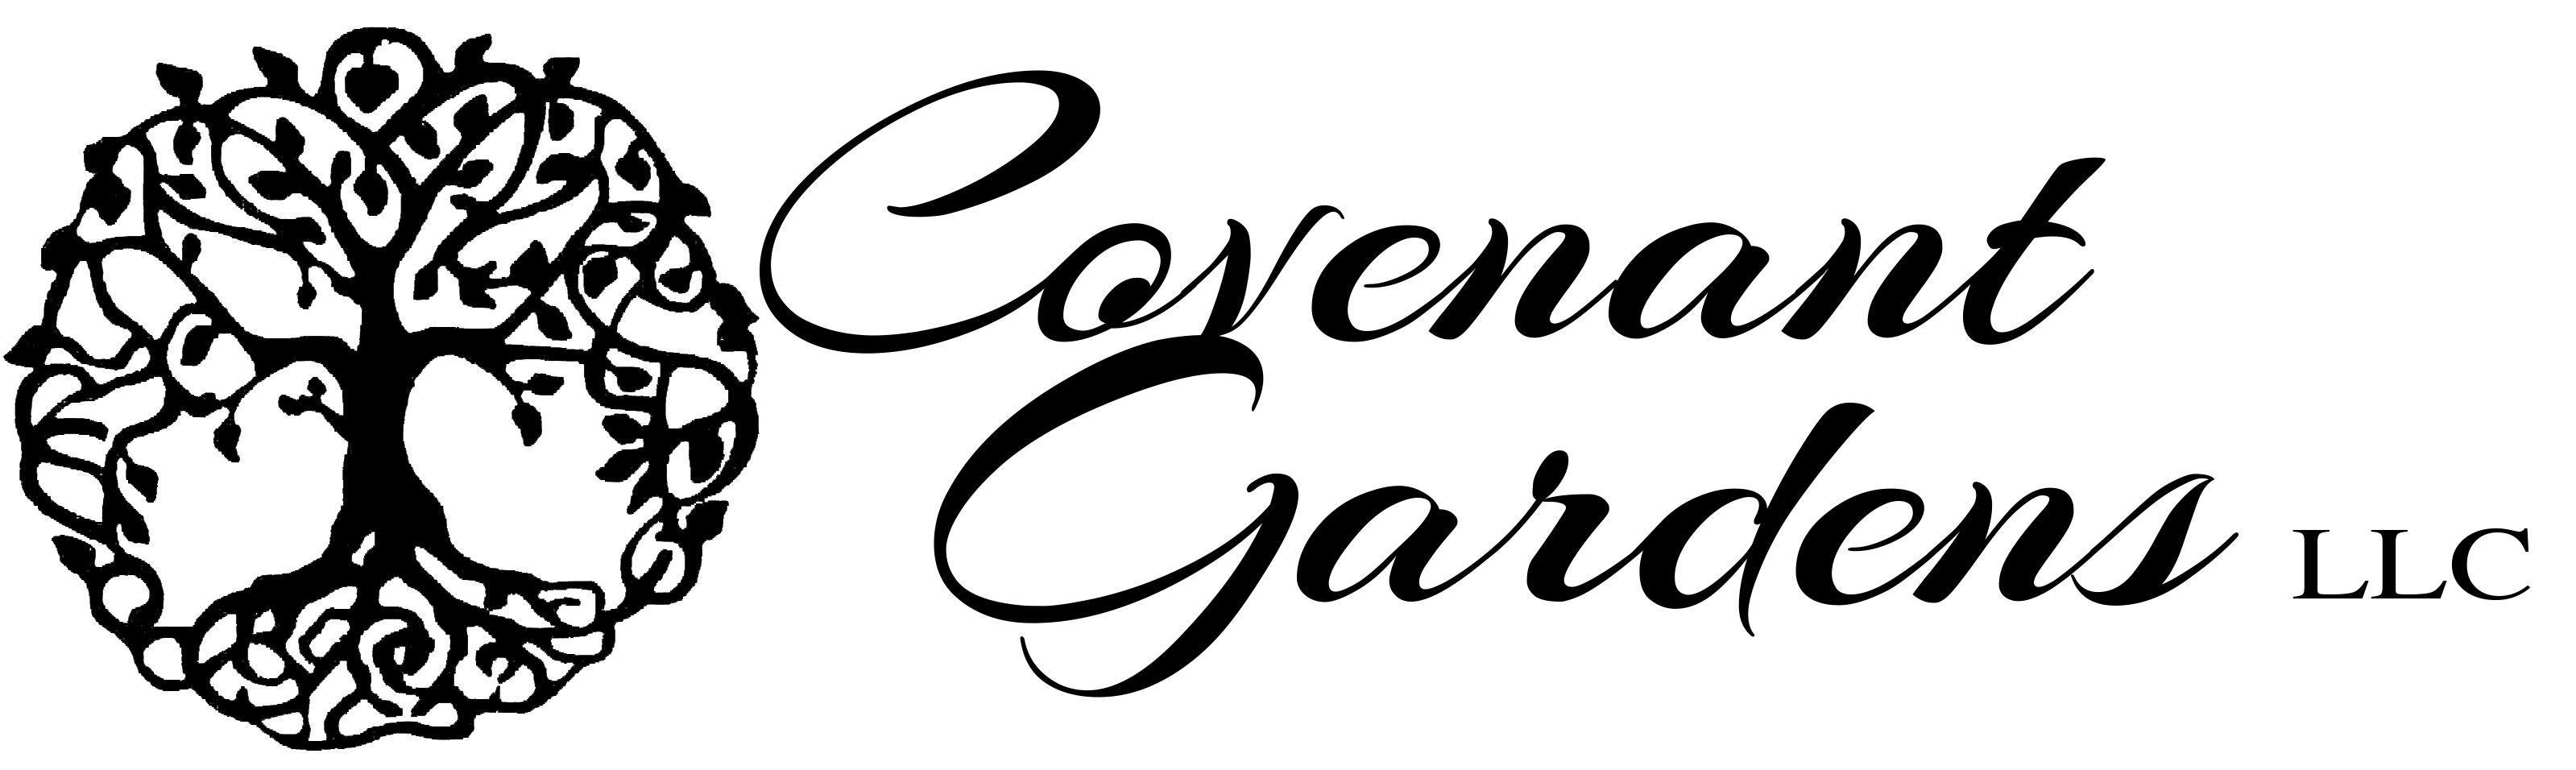 Covenant Gardens LLC